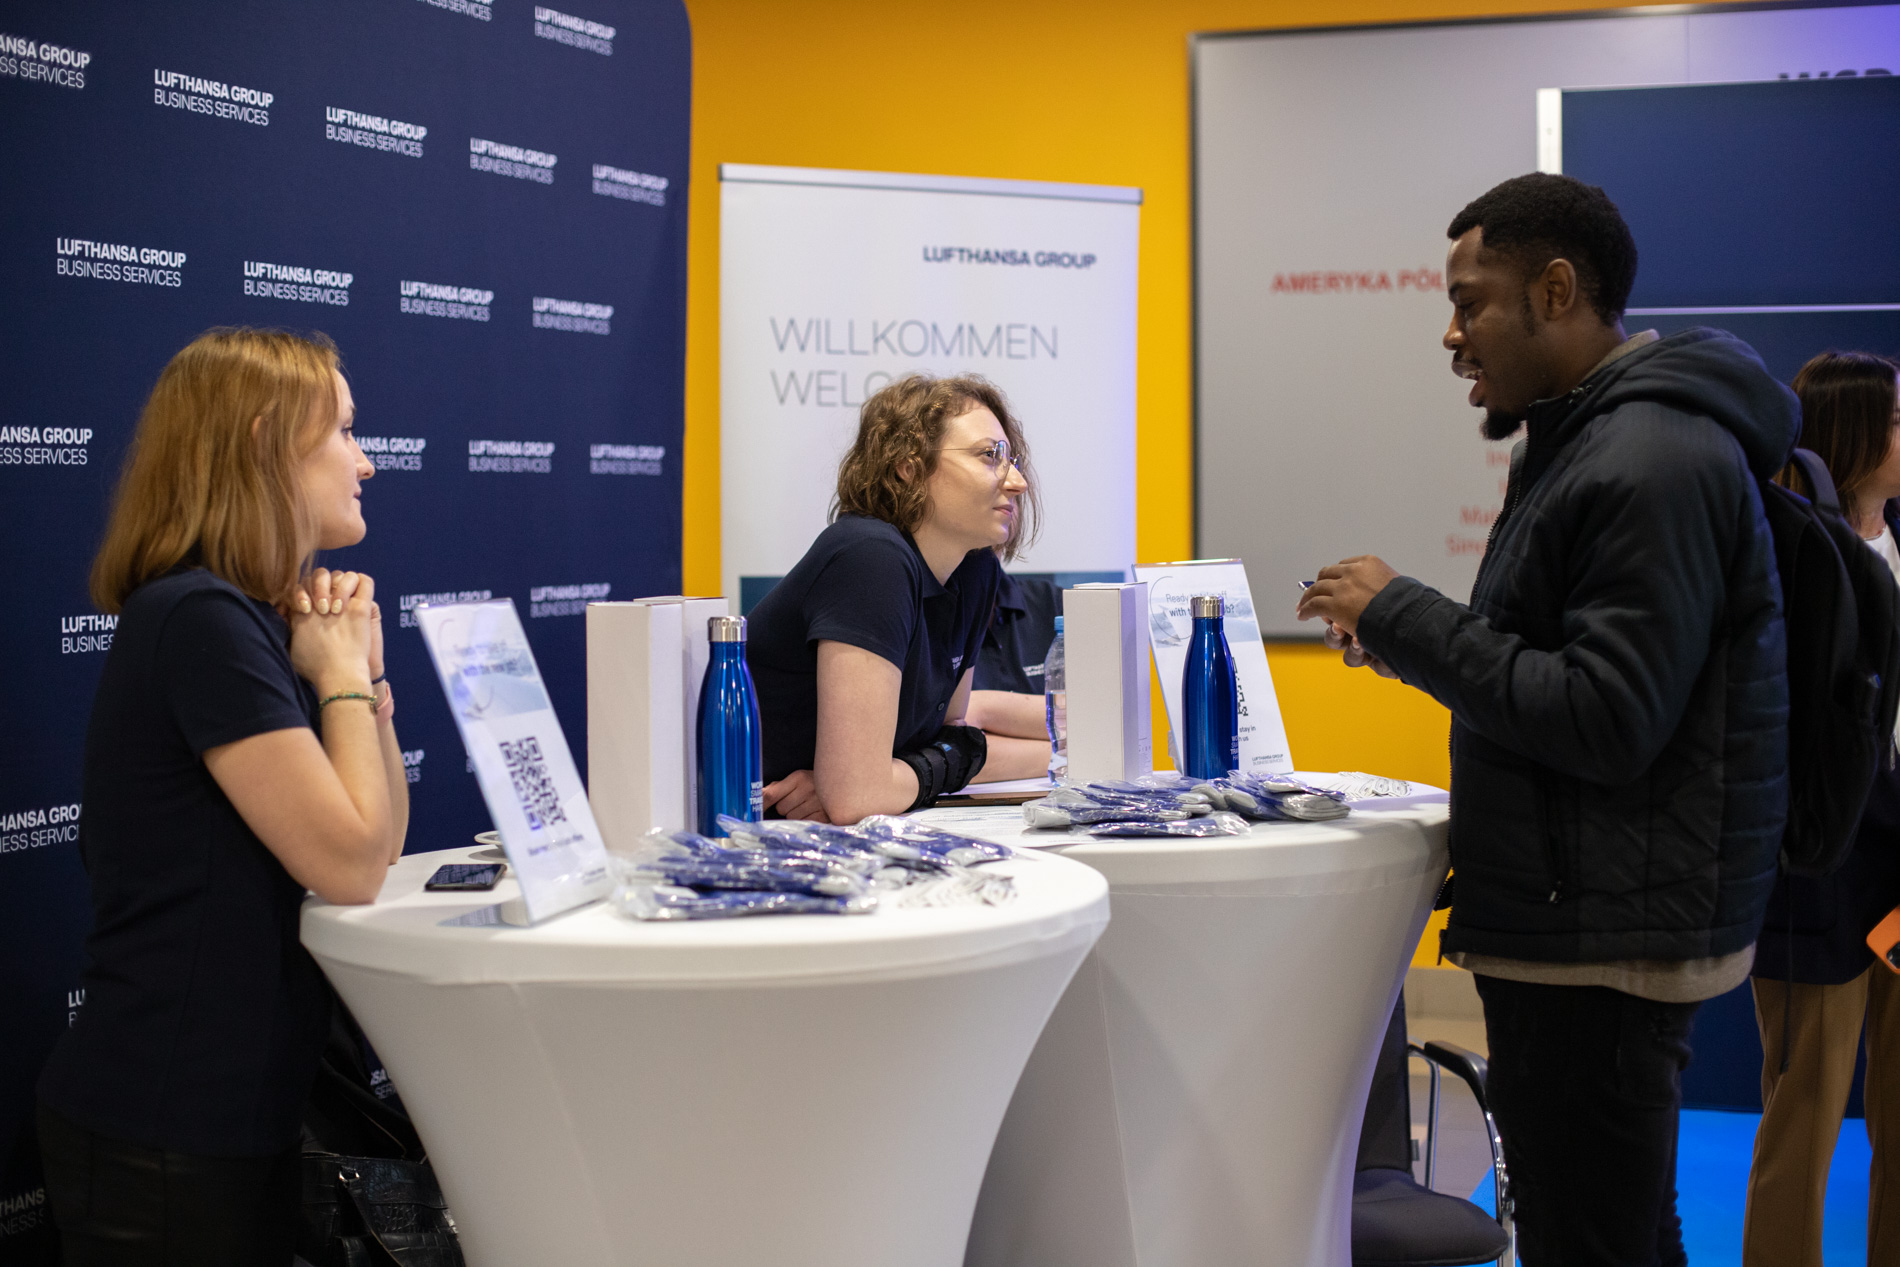 Pracownicy Lufthansa Global Business Services w trakcie rozmowy z uczestnikiem podczas targów targów Aviation Career Day we WSIiZ